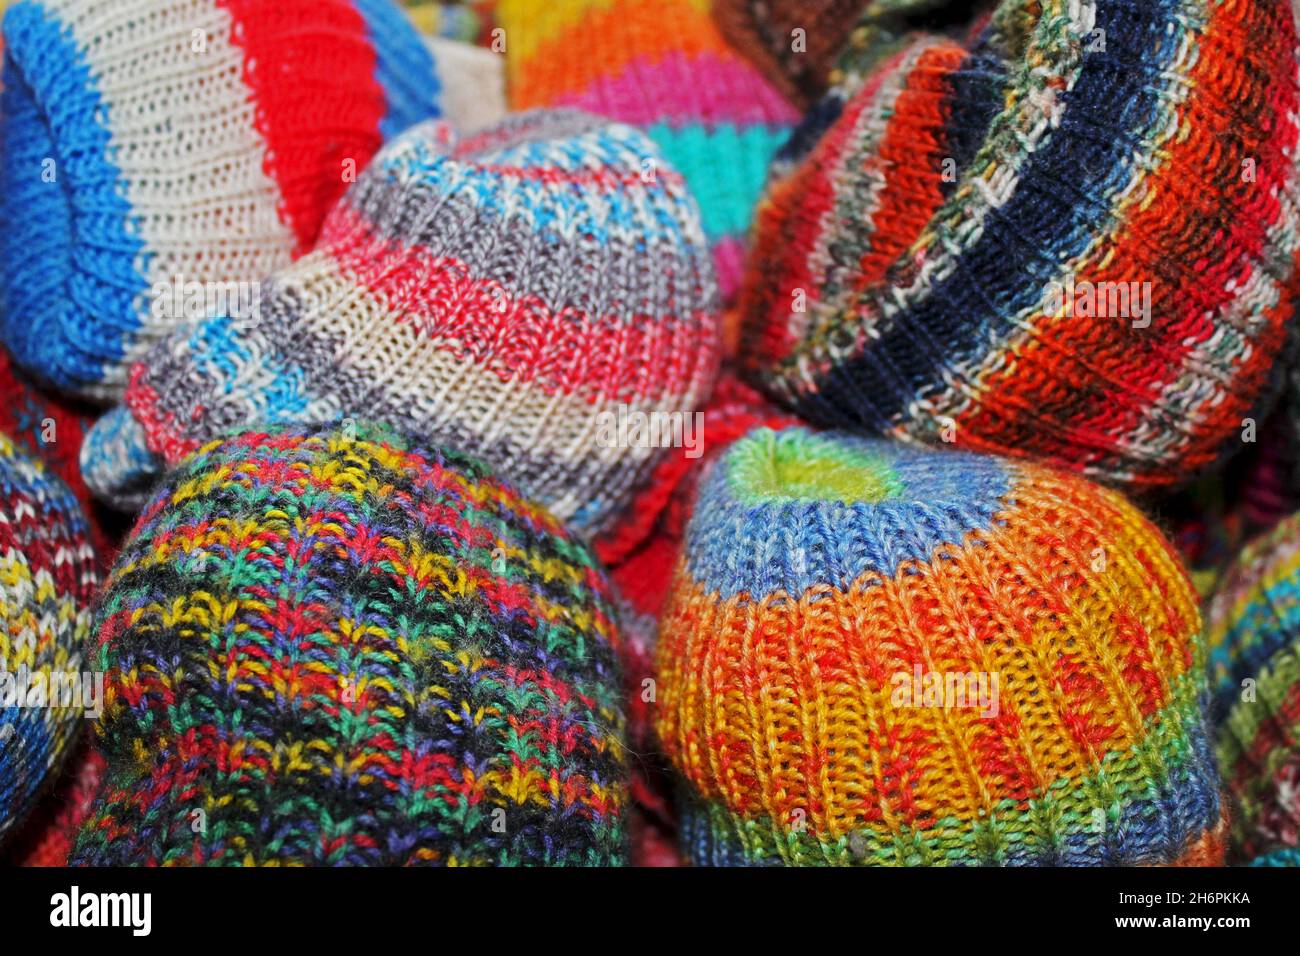 Bunte, selbst gestrickte Wollsocken in verschiedenen Mustern und Farben. Stock Photo